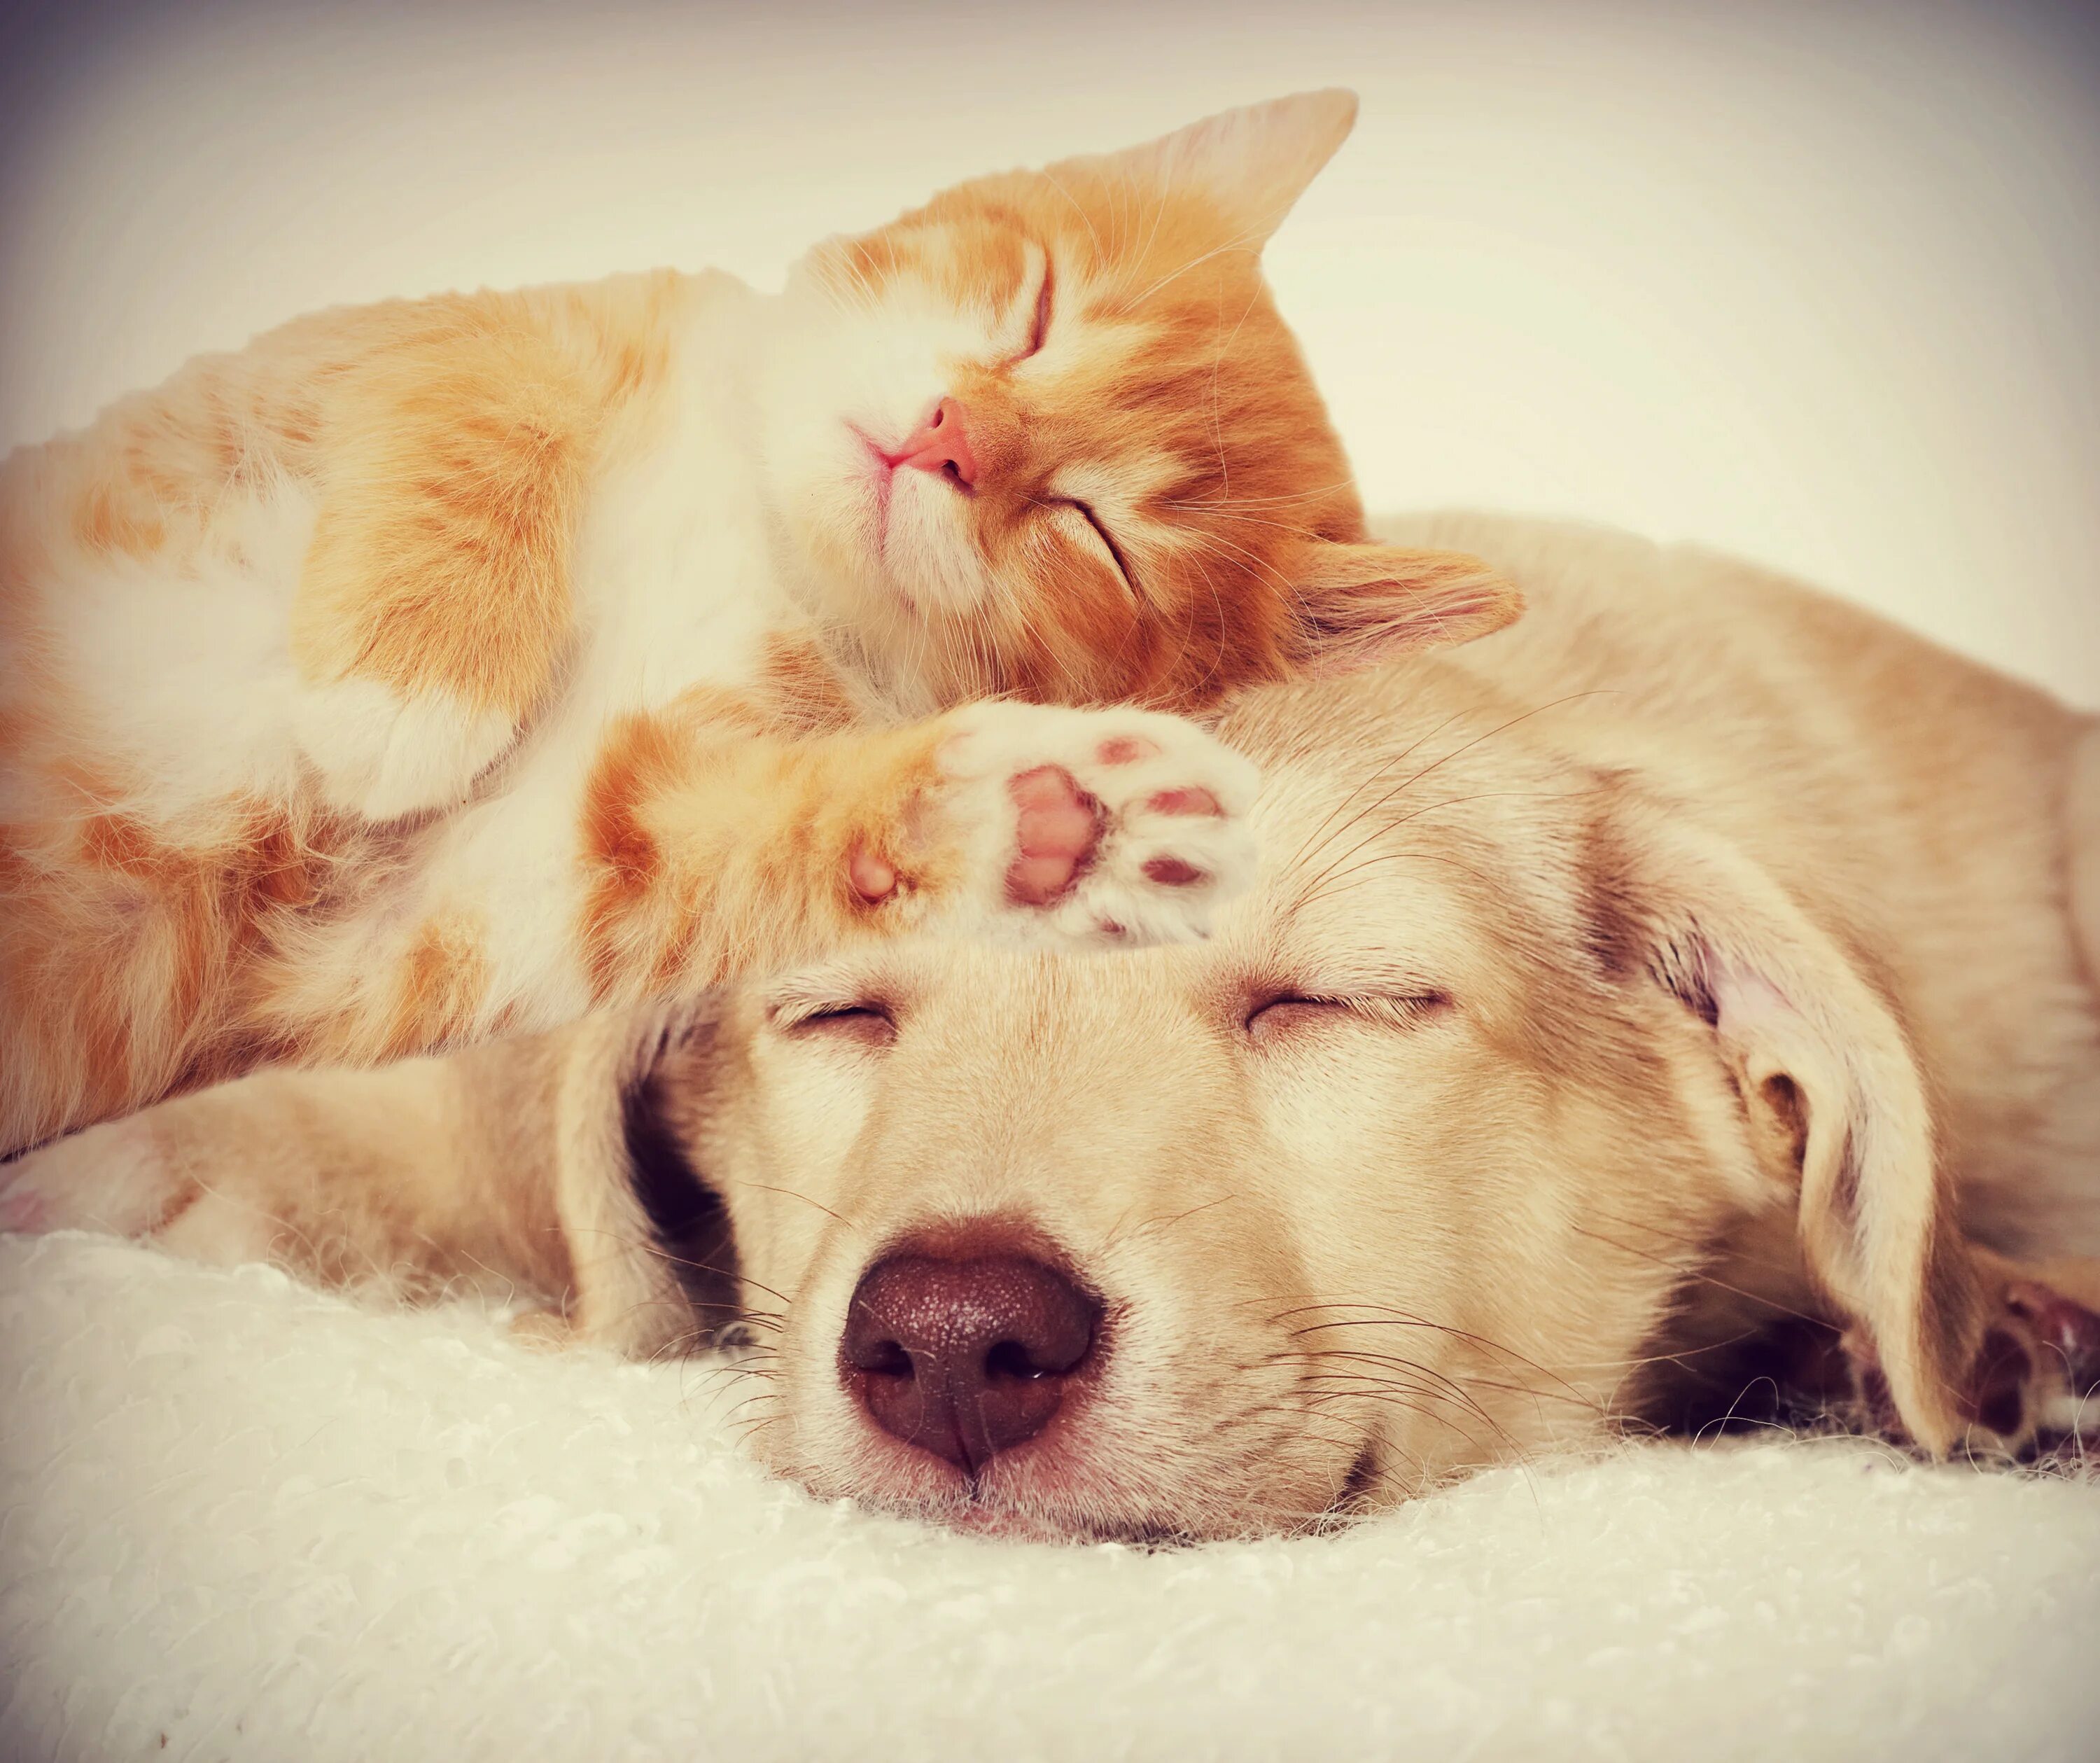 Снится жить вместе. Кот и собака спят вместе. Собака и кошка вместе. Кошка с собакой в обнимку. Коти соьака спчт вместе.